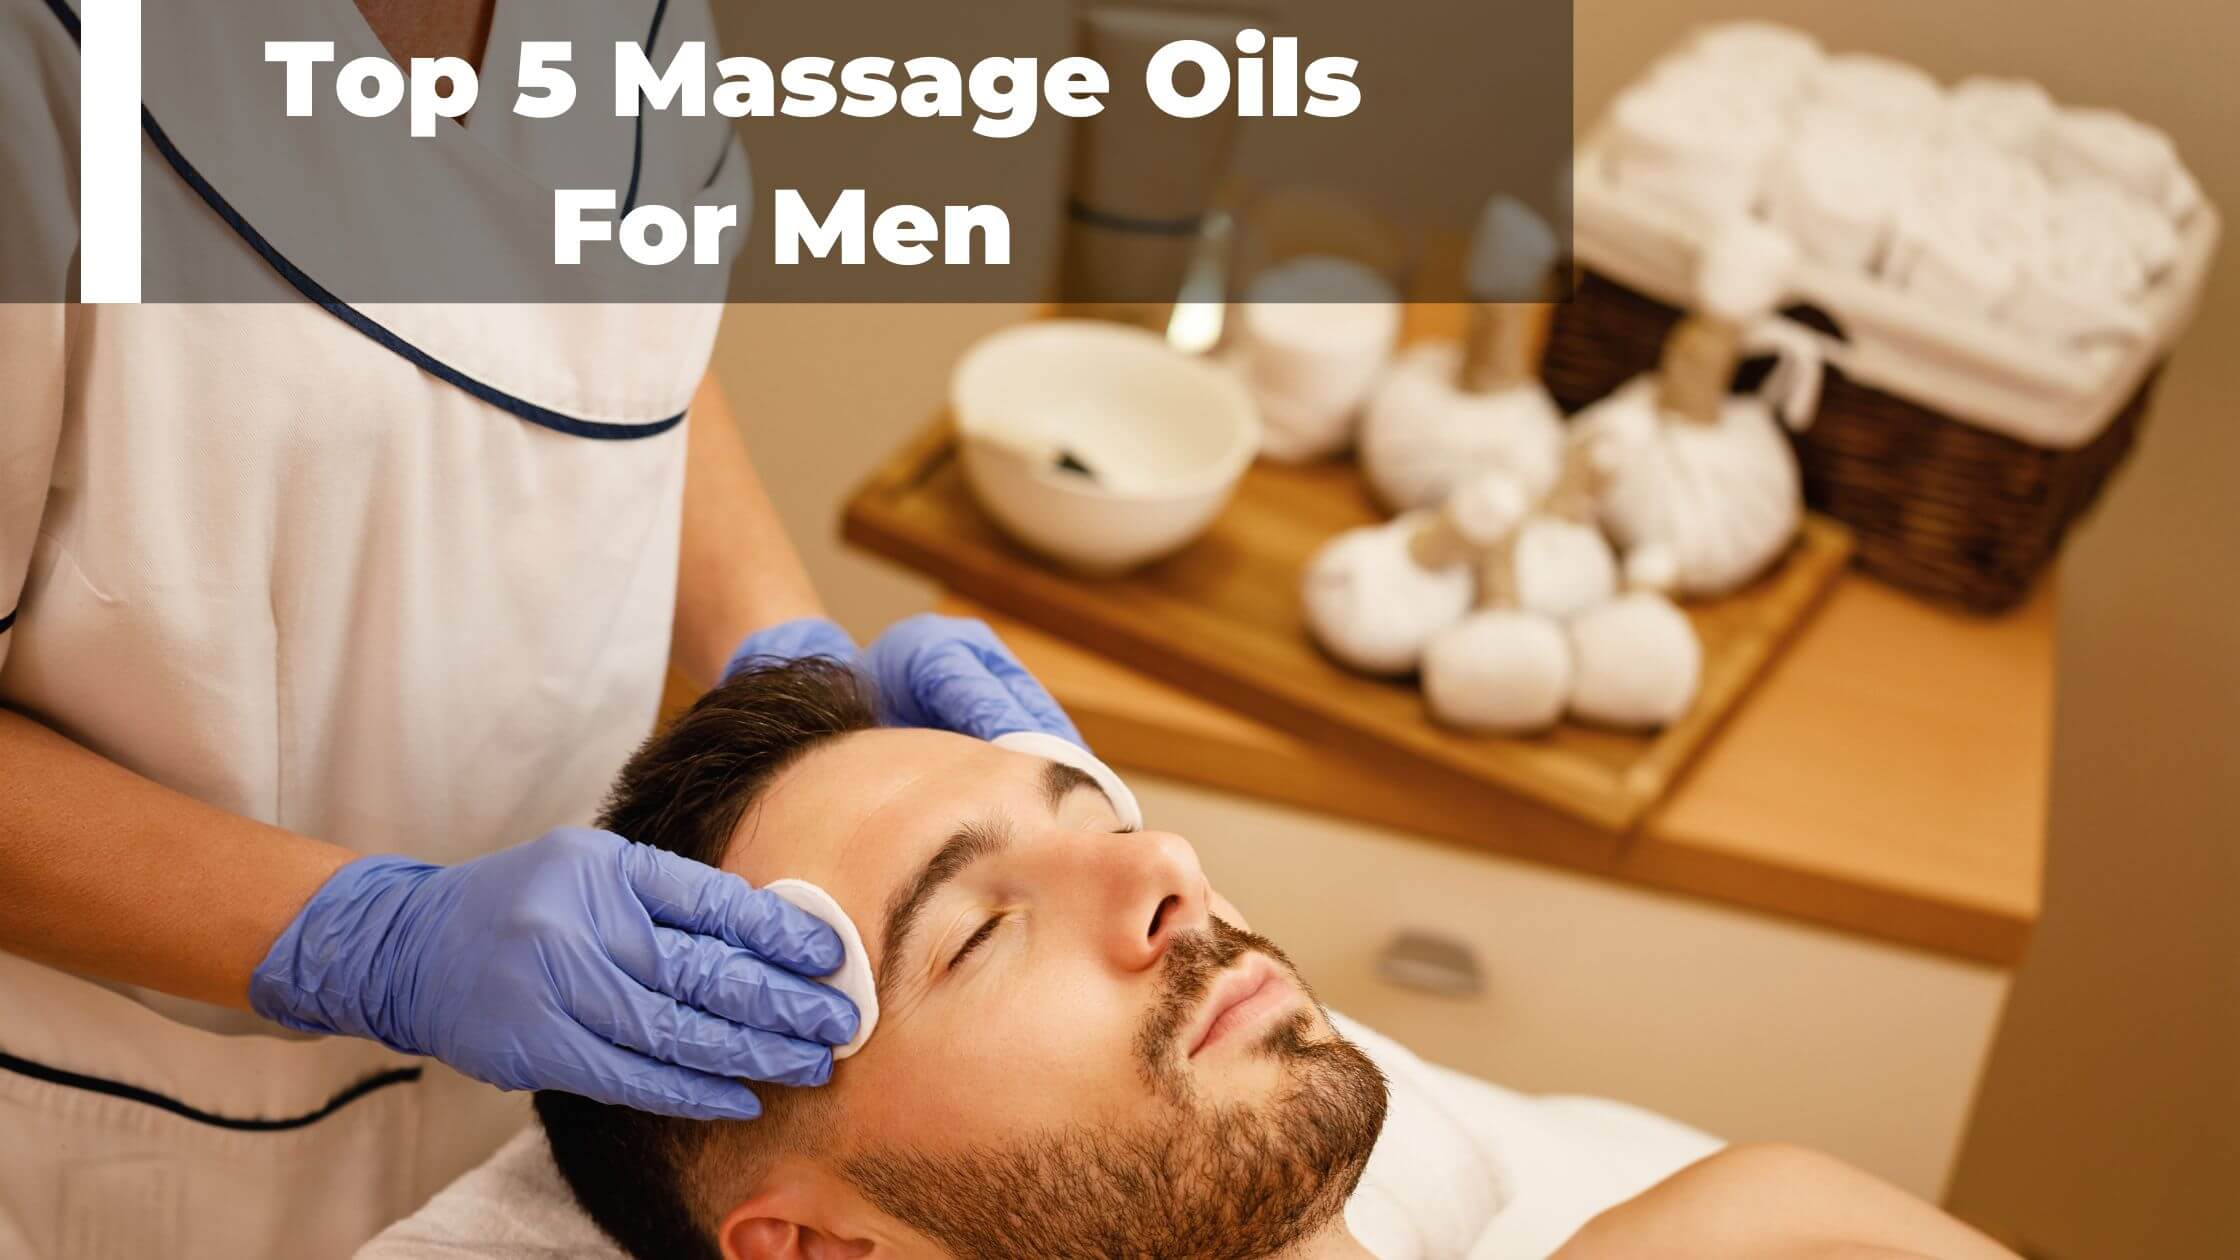 finansiel Avl Høring The Top 5 Massage Oils For Men In 2022